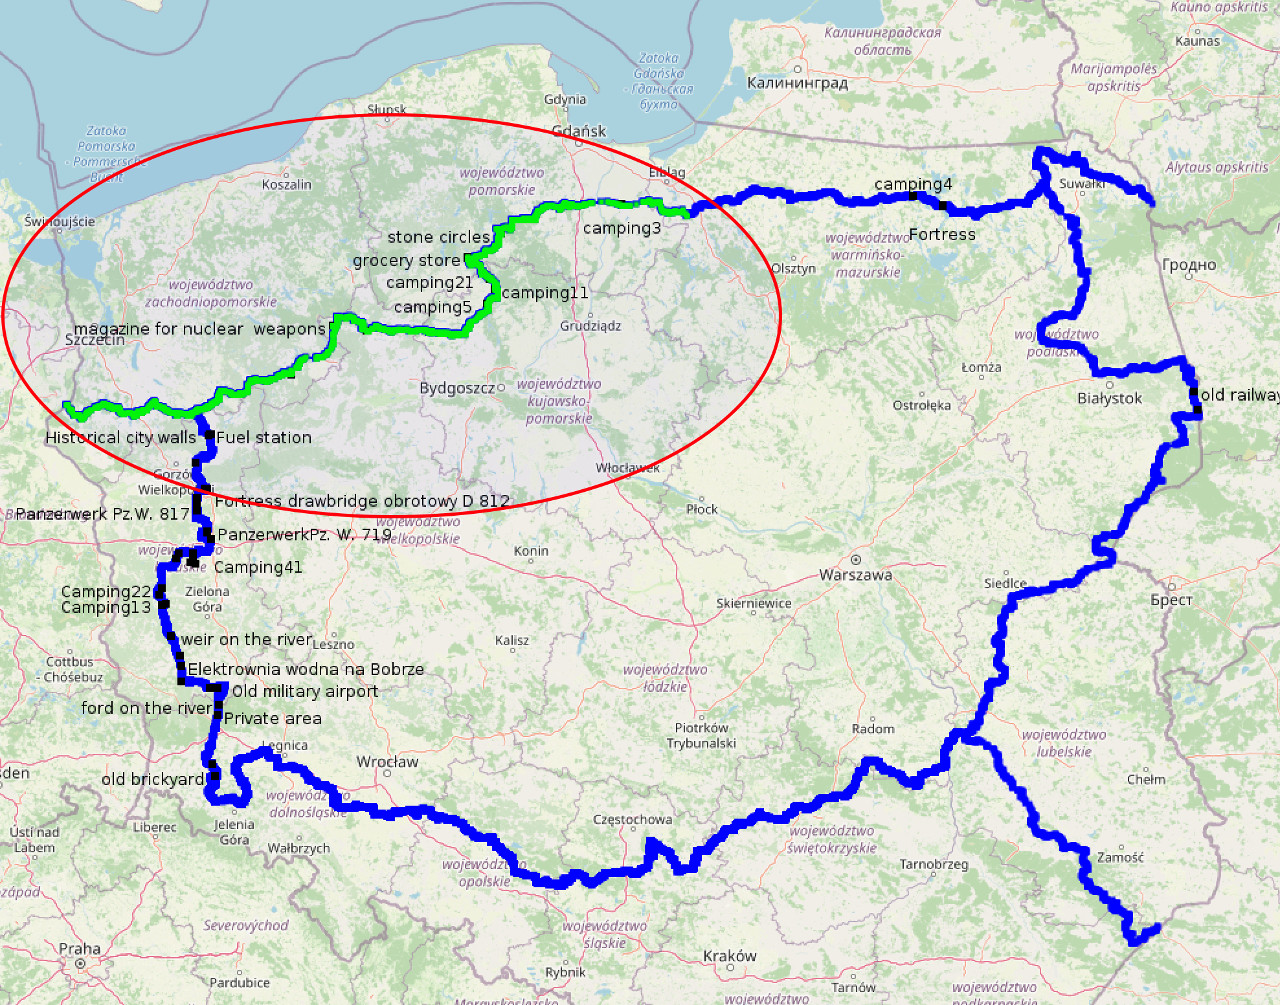 Trasa TET w Polsce z zaznaczonym odcinkiem Pasłek - Tuchola - Myślibórz - granica niemiecka 